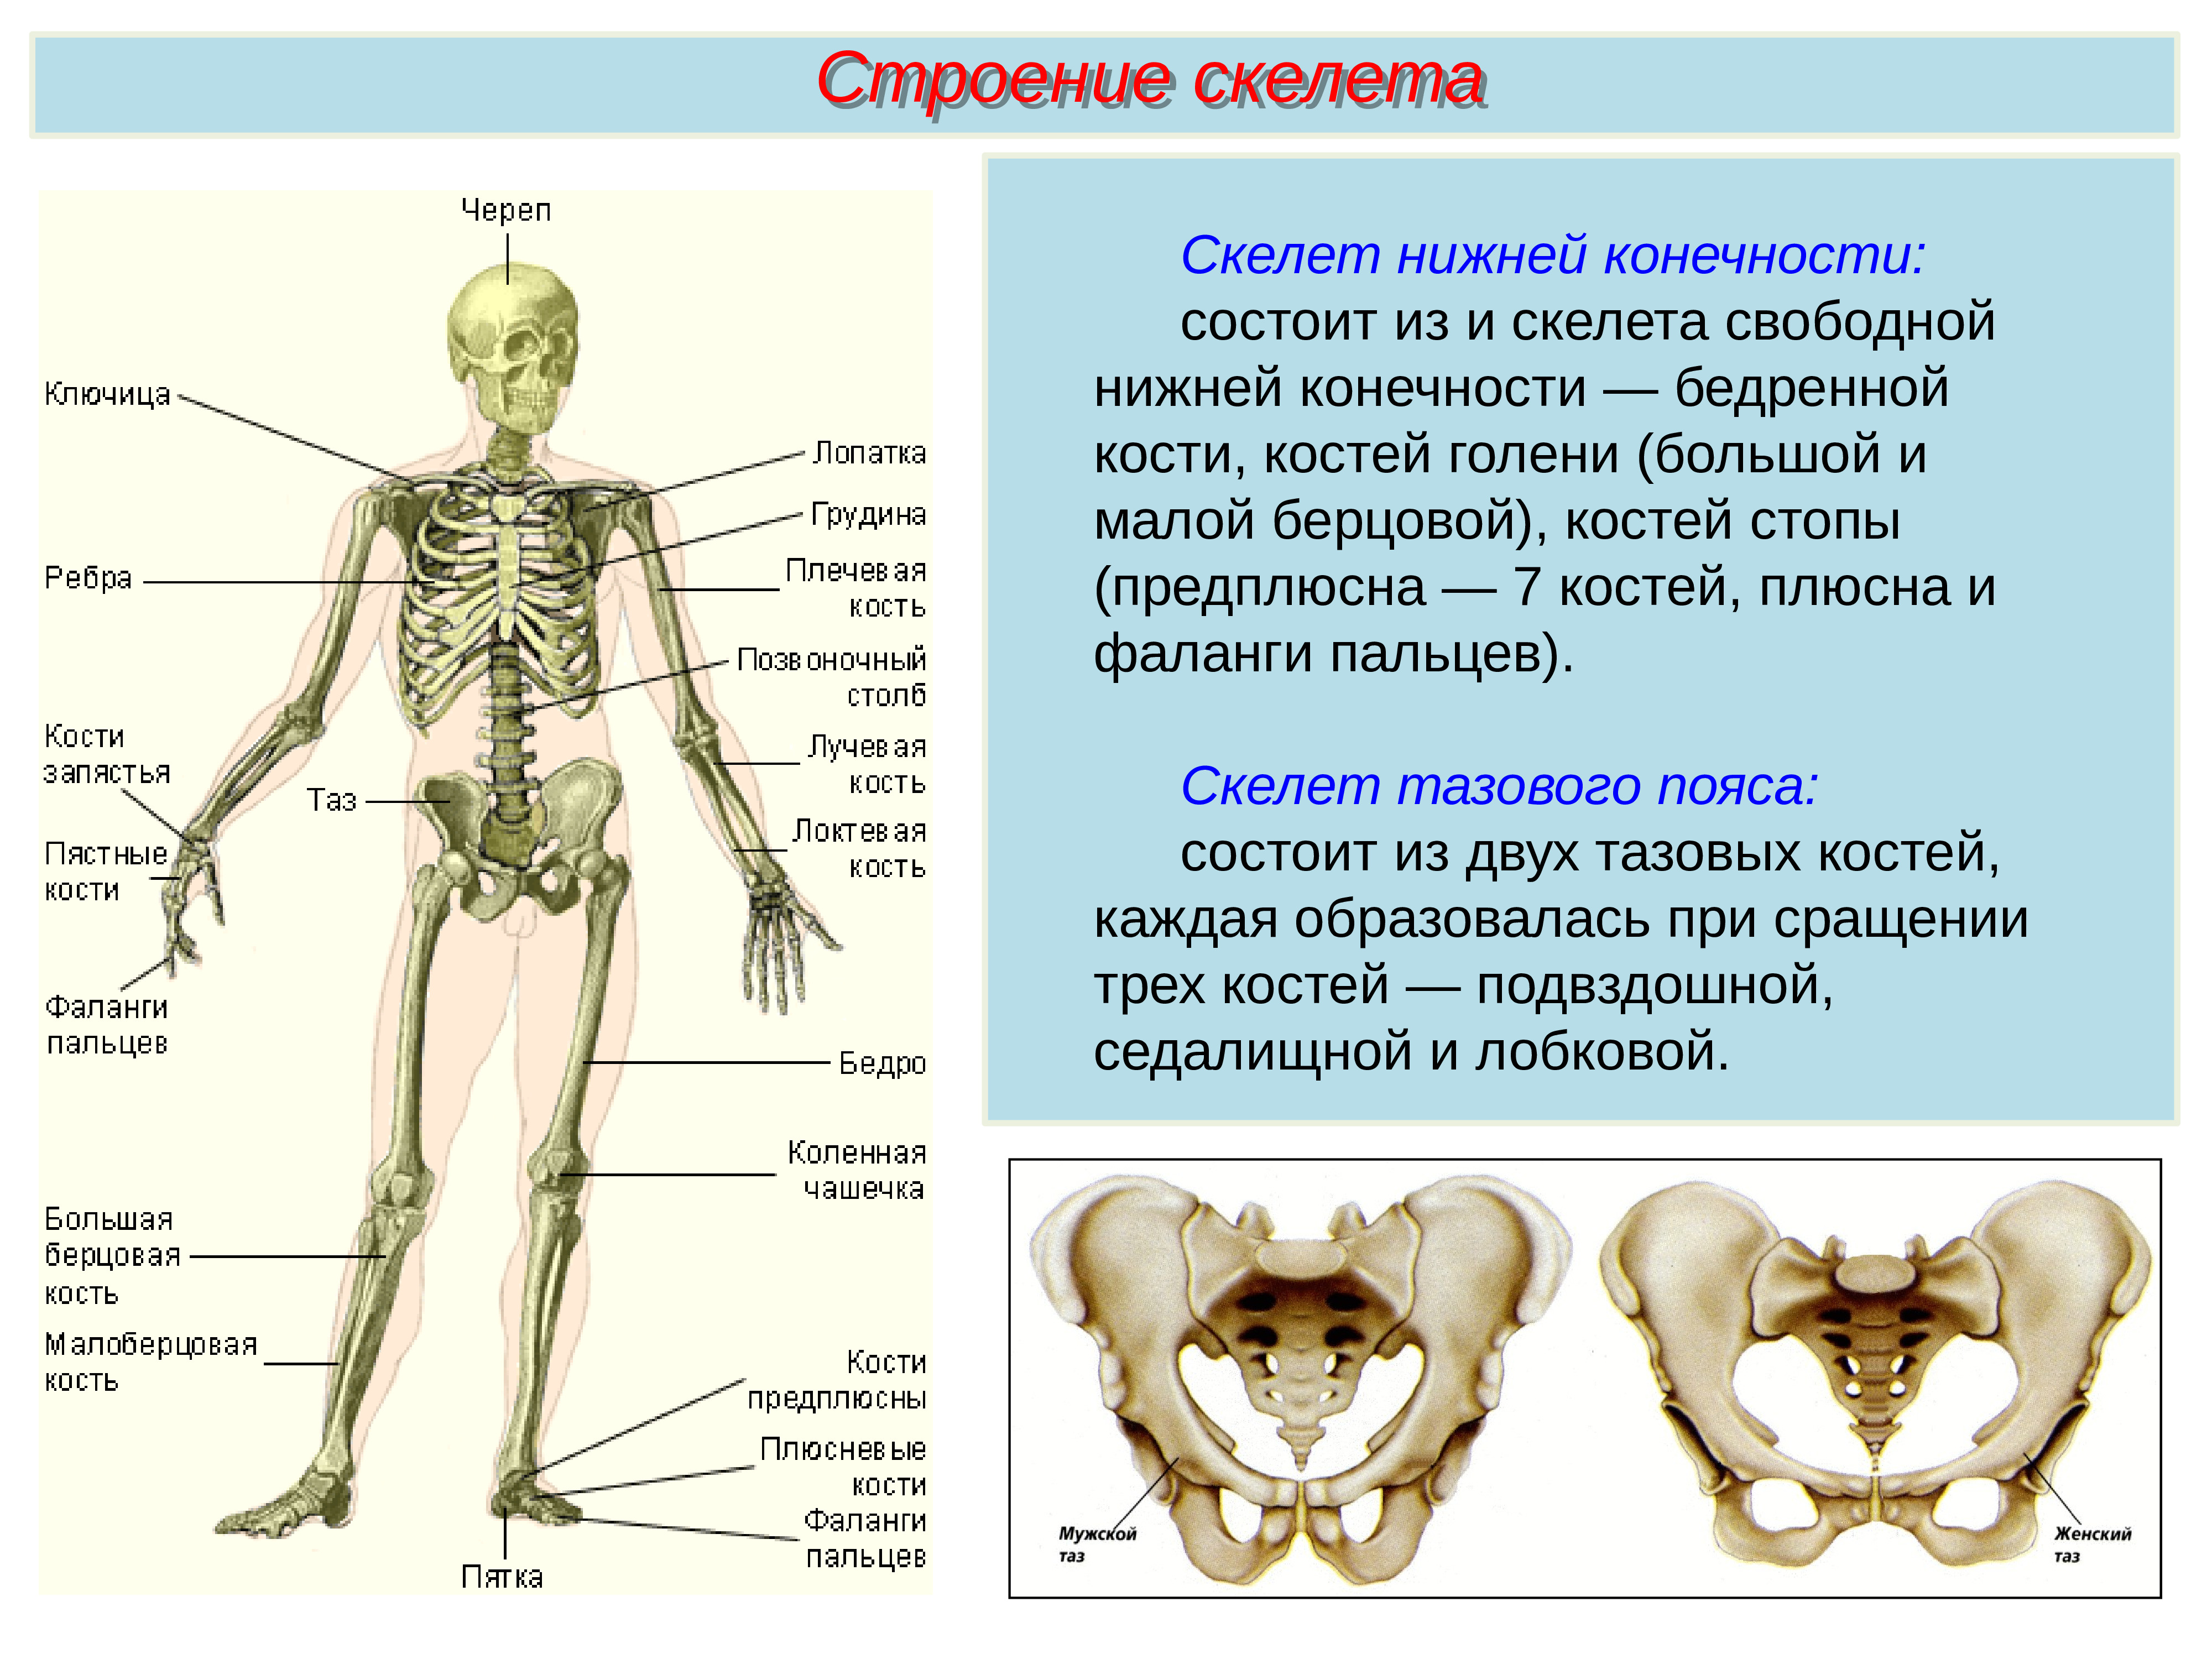 Скелет туловища человека с названием костей